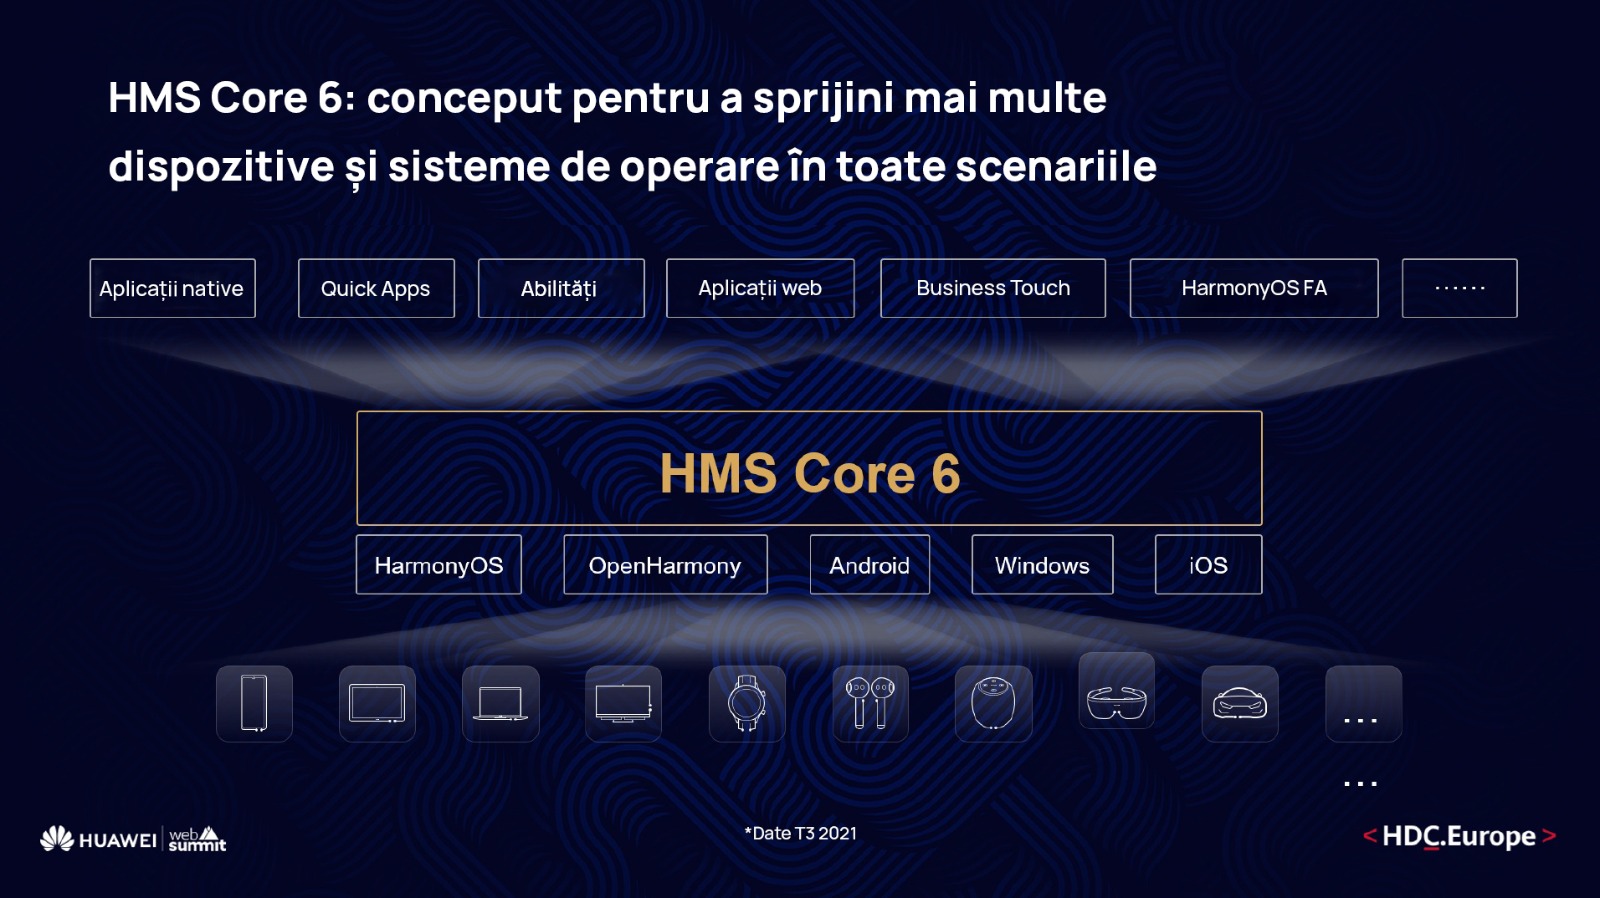 SUMMIT WEB 21: Huawei anunță viziunea ecosistemului HMS în cadrul Developer Conference